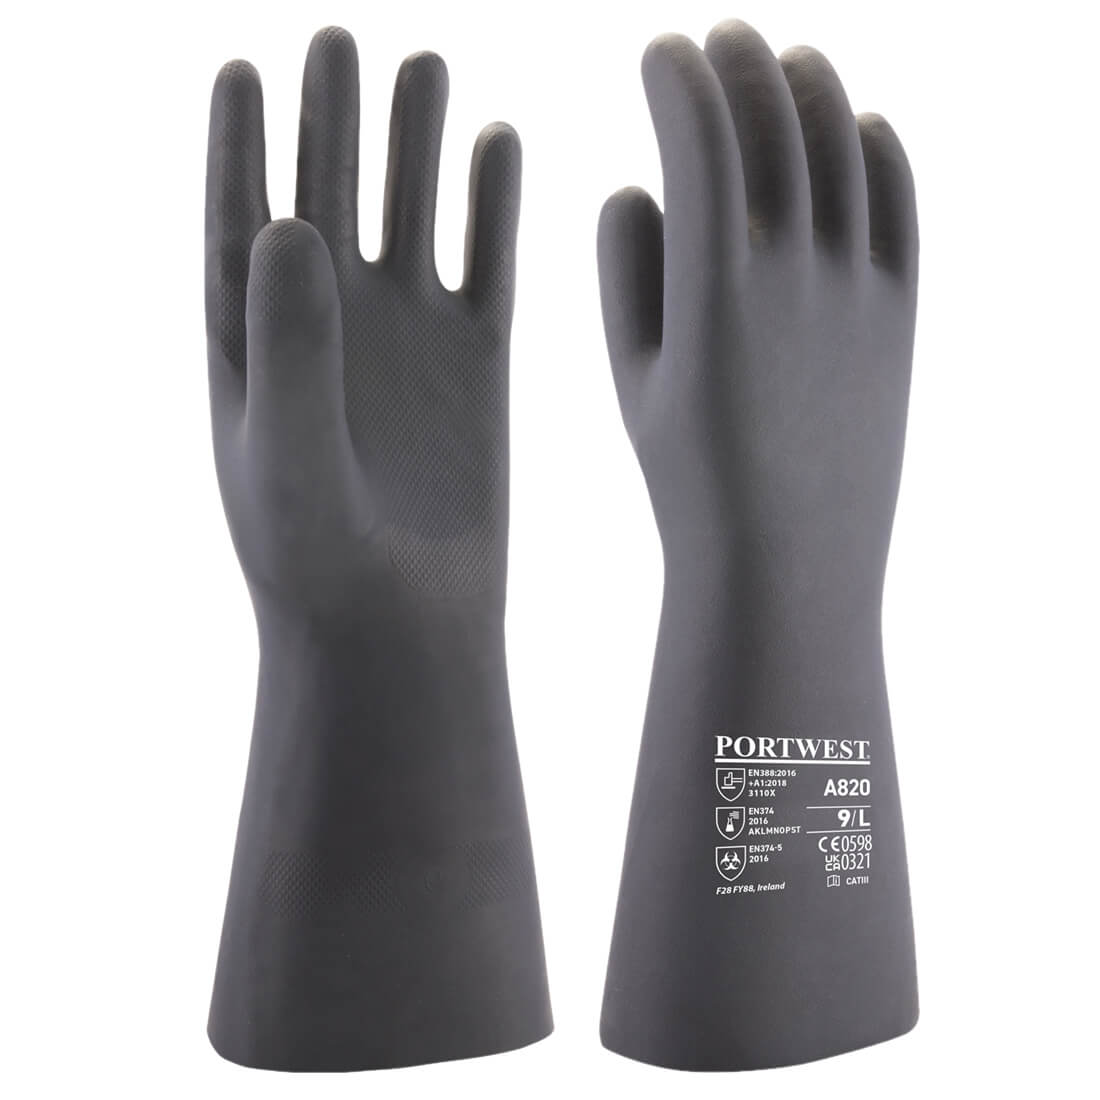 A721 Portwest® Flock-Lined Chemical Gauntlet Barrier Gloves